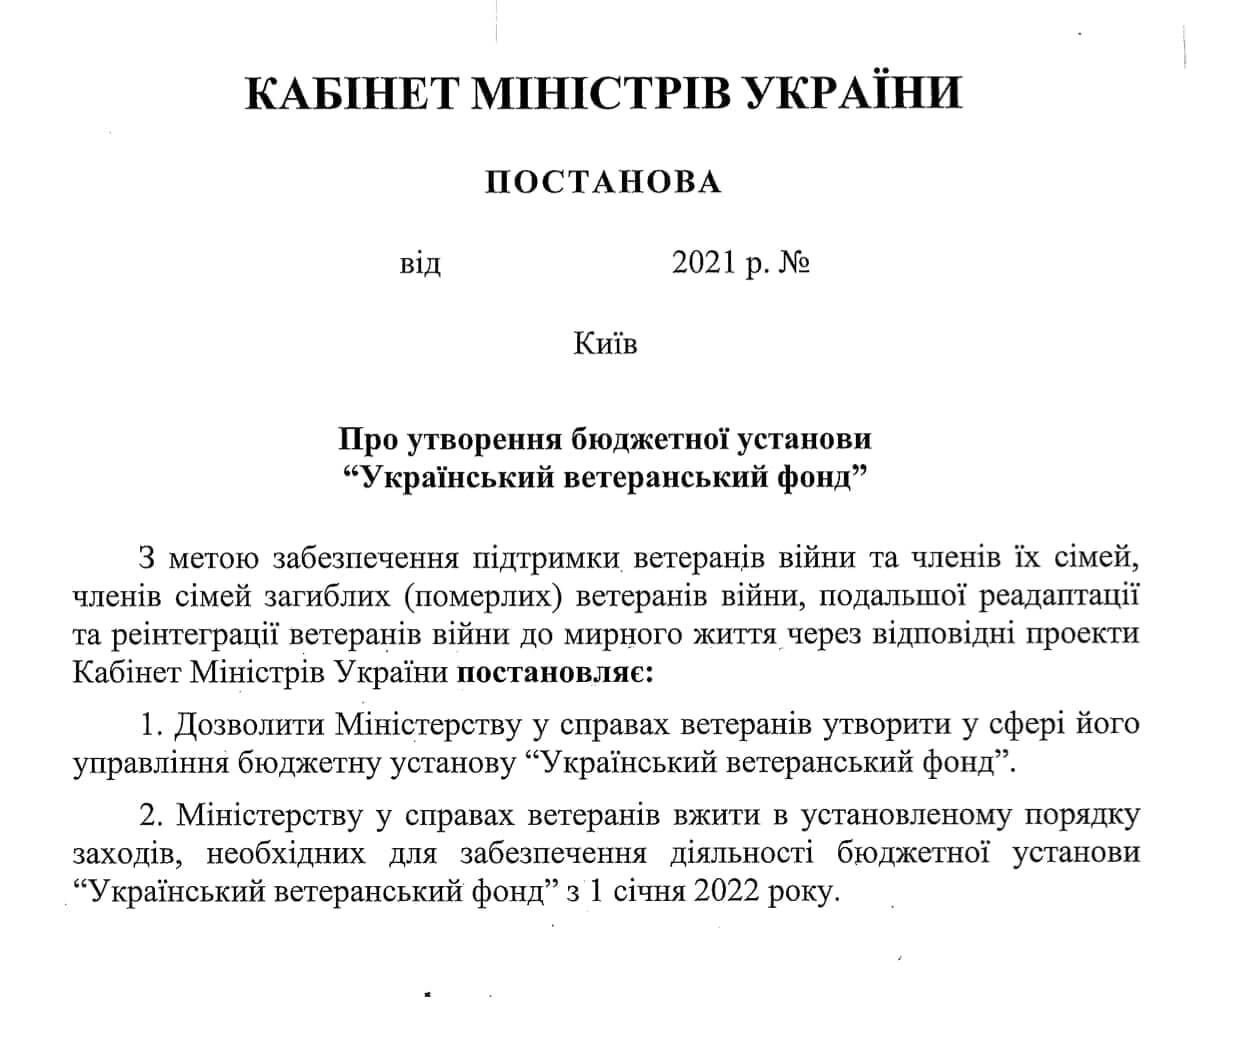 Постановление Кабмина о создании Украинского ветеранского фонда